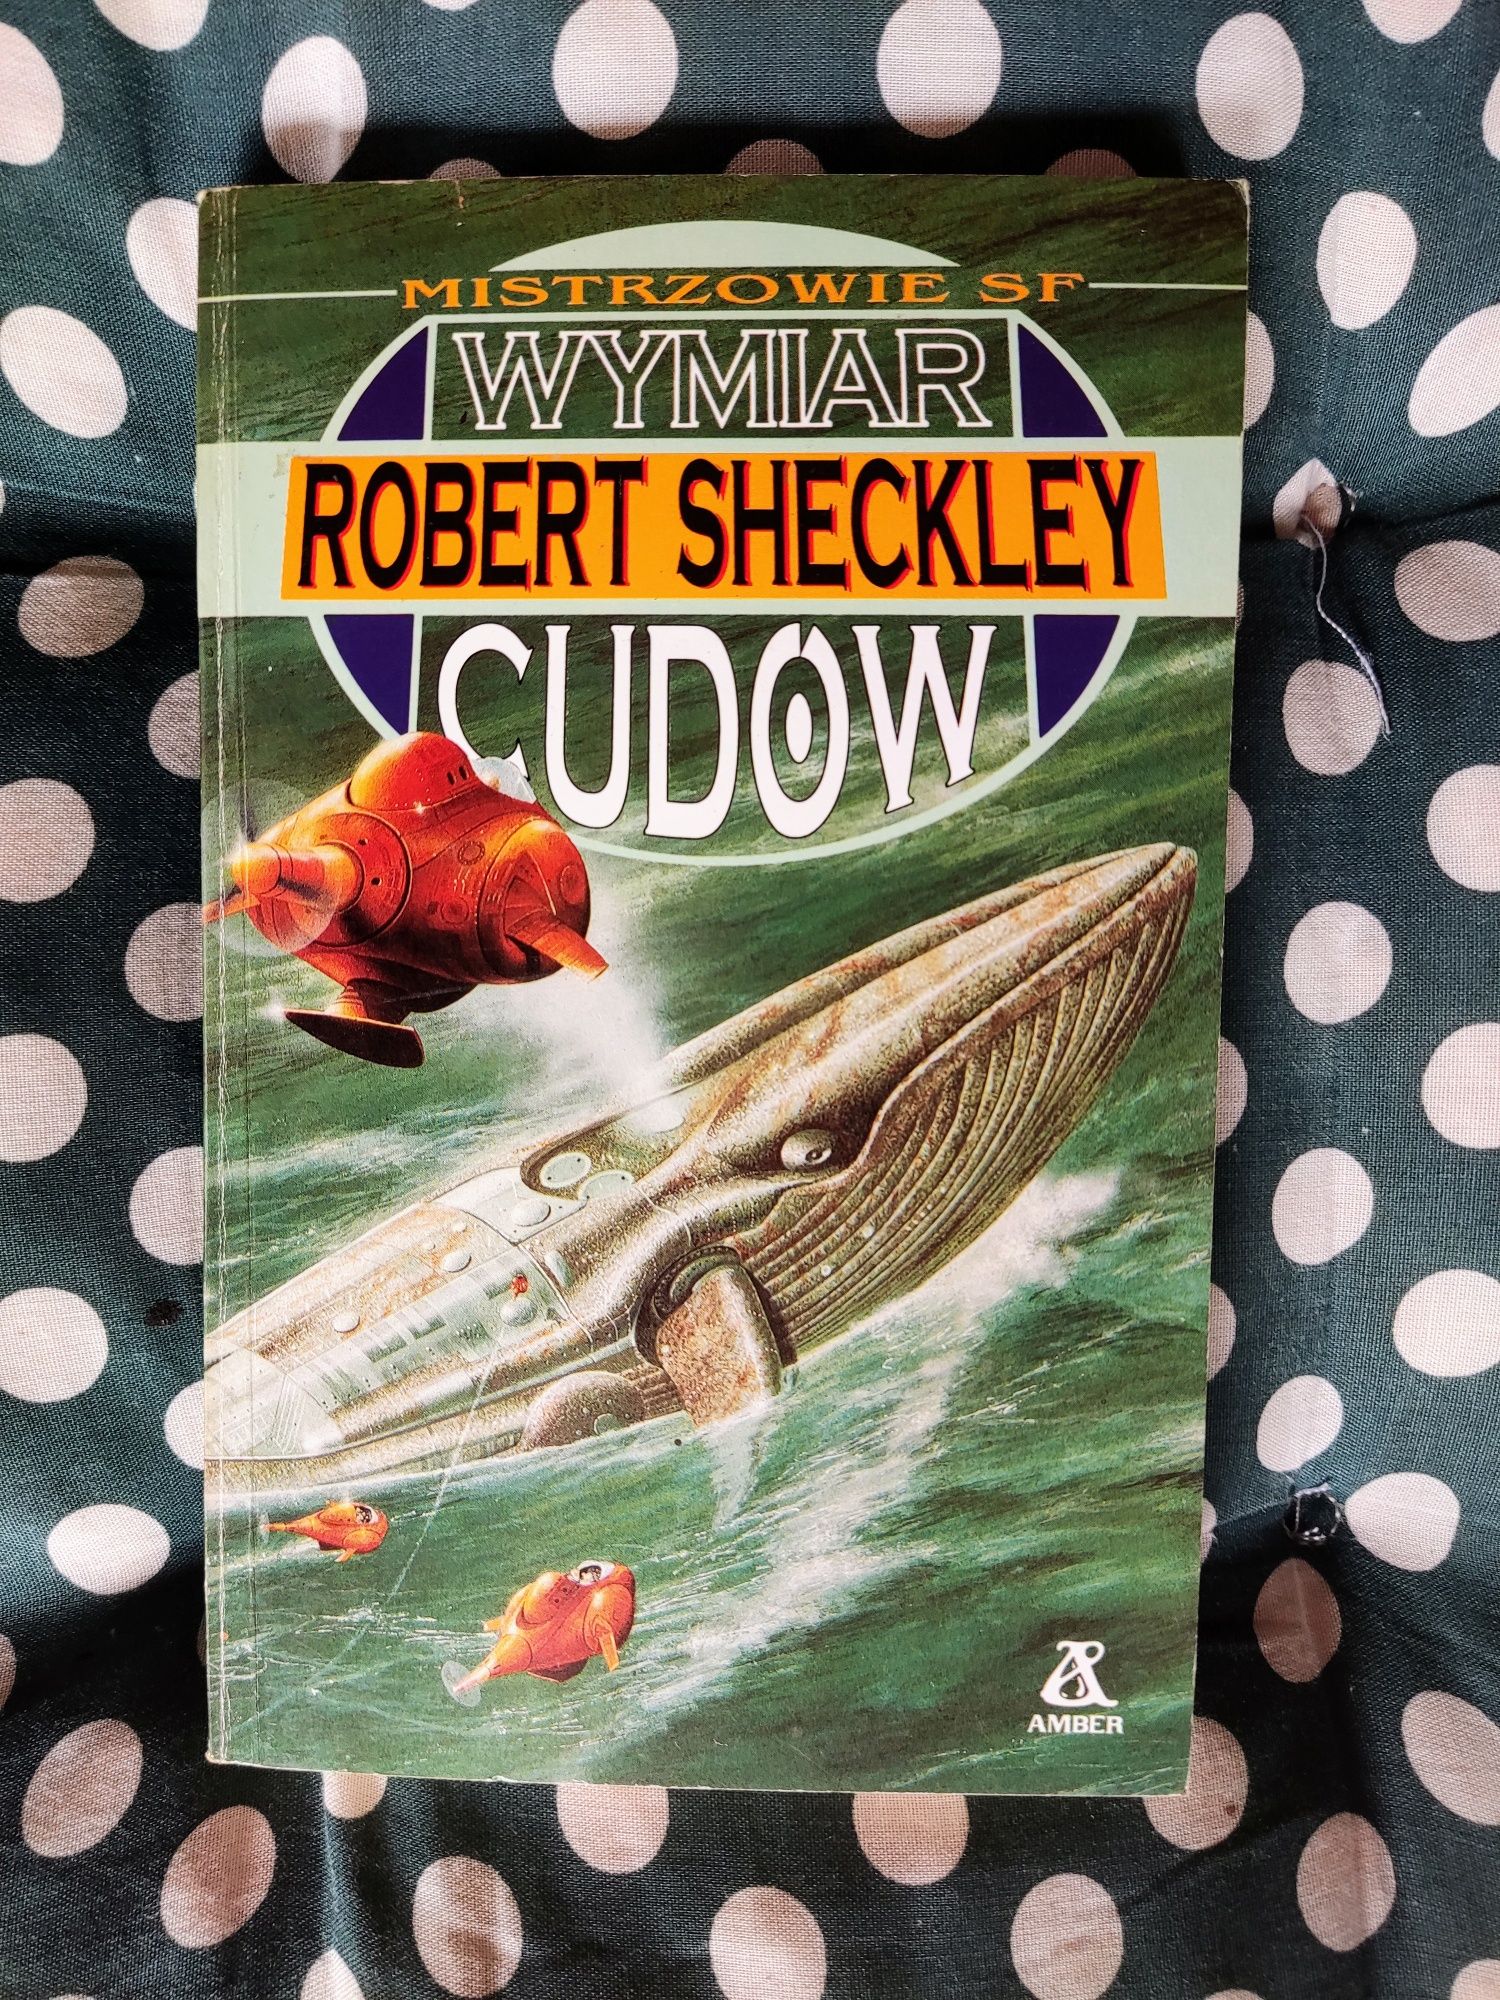 Robert Sheckley - Wymiar cudów - MISTRZOWIE SF